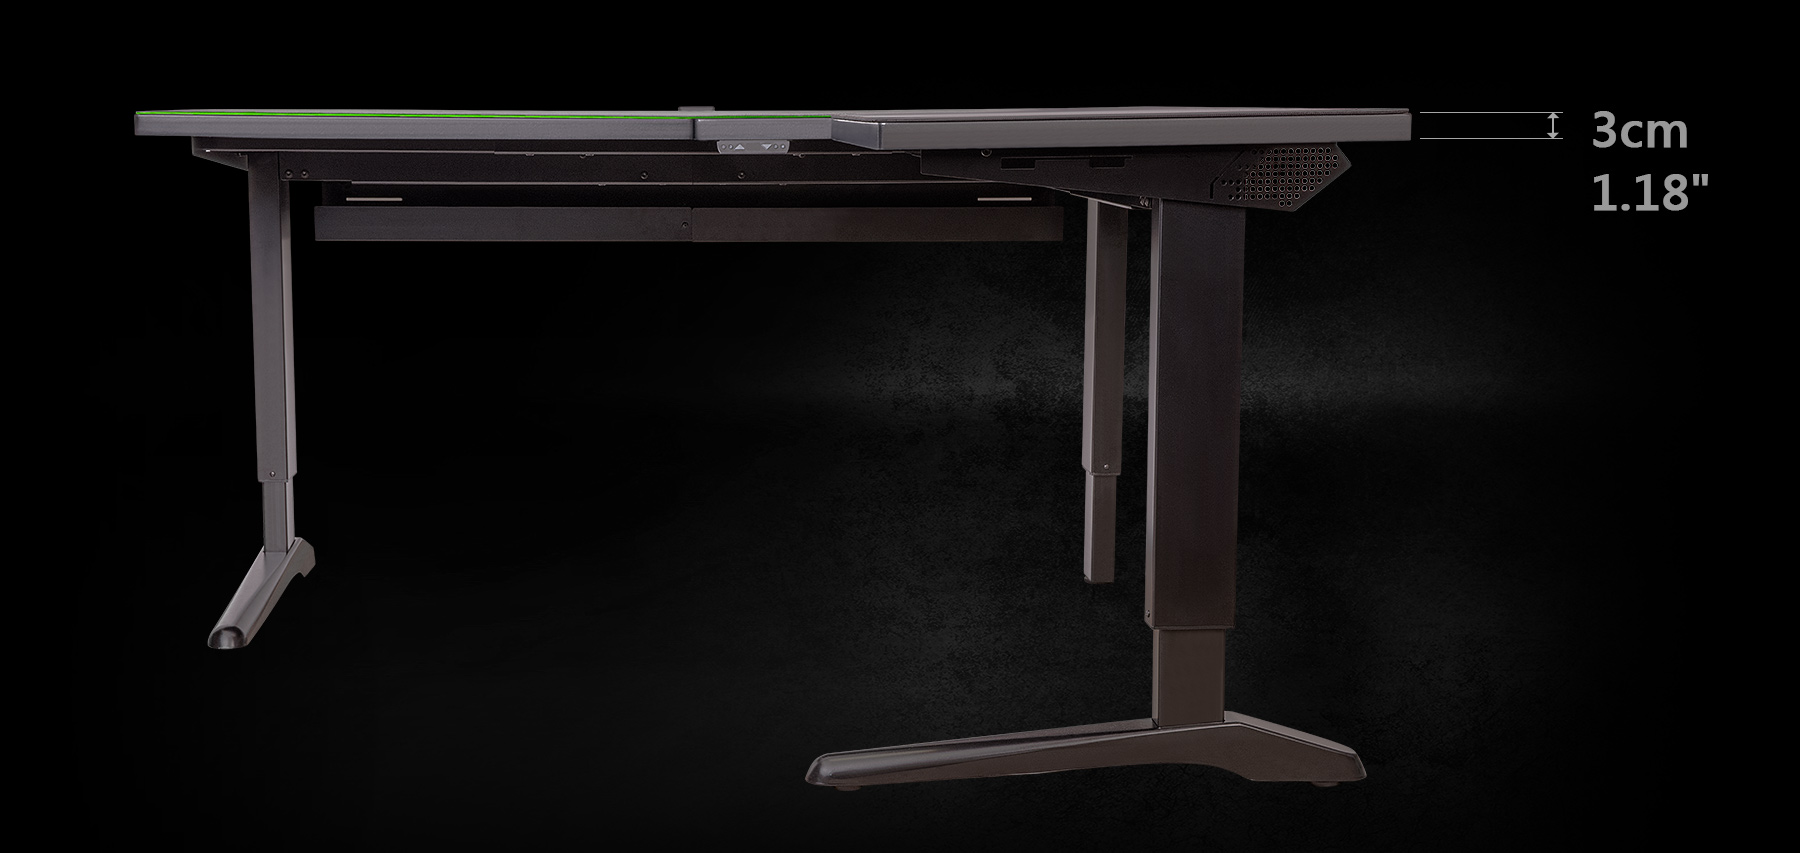 Thermaltake ToughDesk 500L RGB Battlestation Gaming Desk, una mesa gaming  motorizada en forma de L con